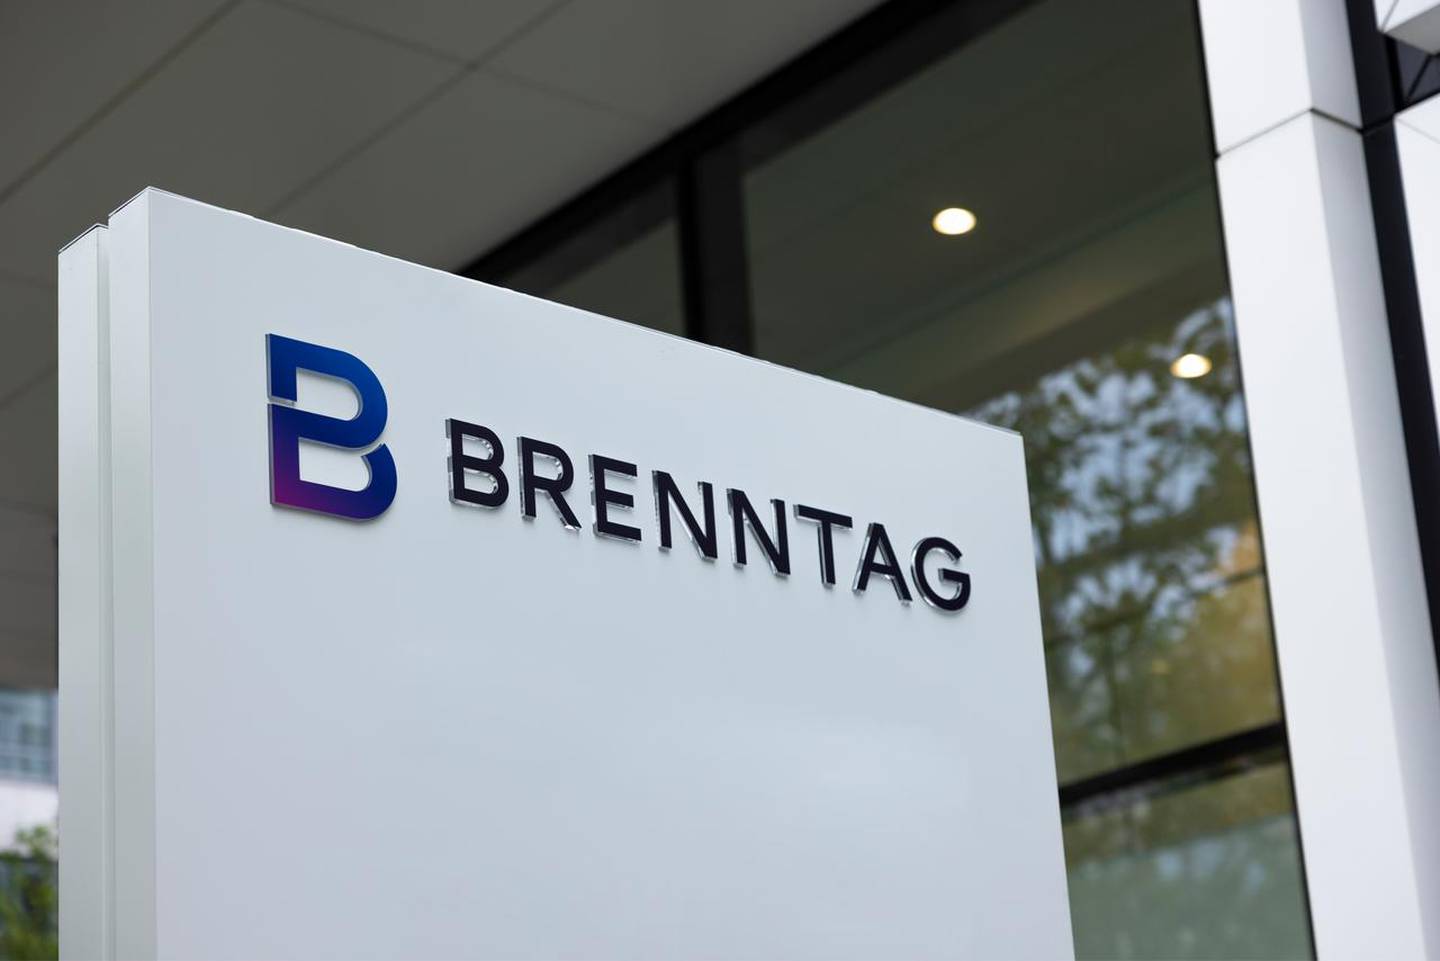 La compañía multinacional de origen alemán, Brenntag, opera una red de más de 600 centros distribuidos en 72 países. Este 1° de marzo anunciaron la apertura de su centro de servicios en Belén de Heredia